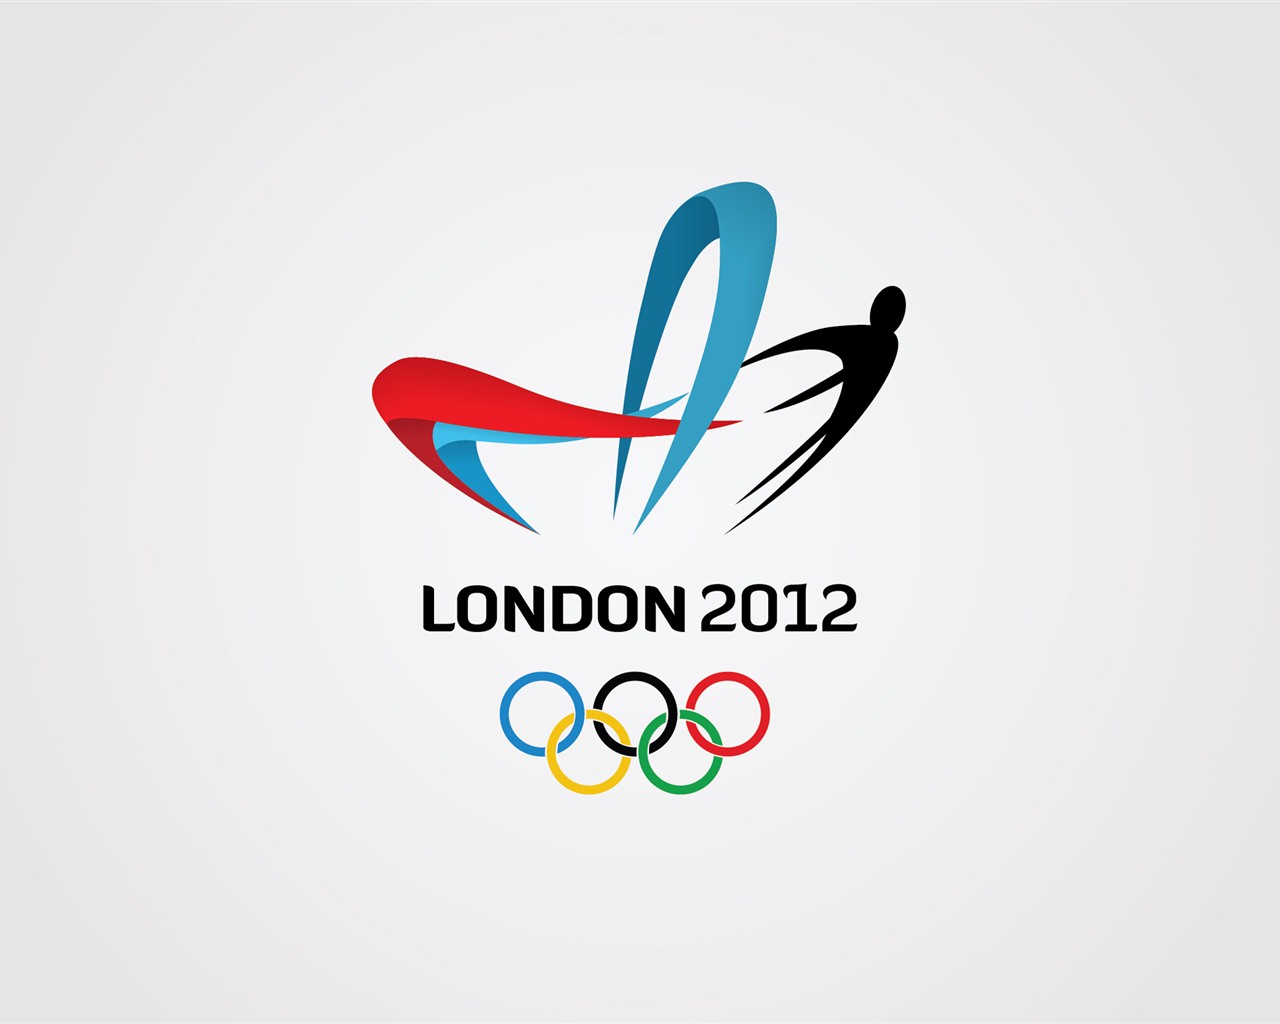 Londres 2012 Olimpiadas fondos temáticos (2) #25 - 1280x1024